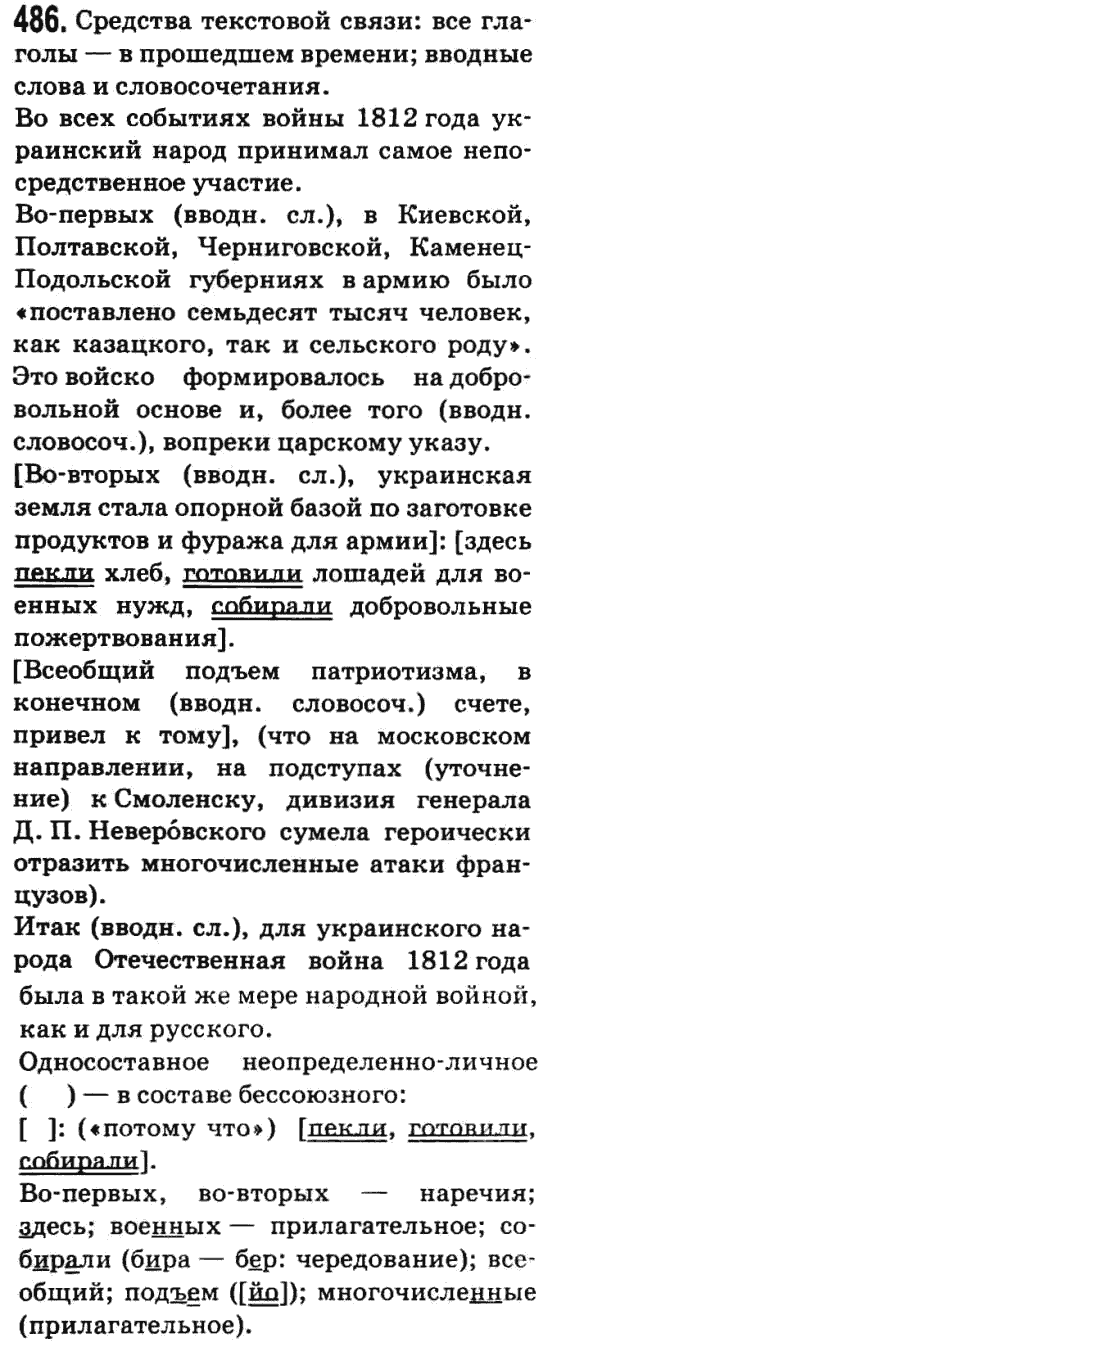 Русский язык 9 класс Баландина Н.Ф., Дегтярева К.В. Задание 486